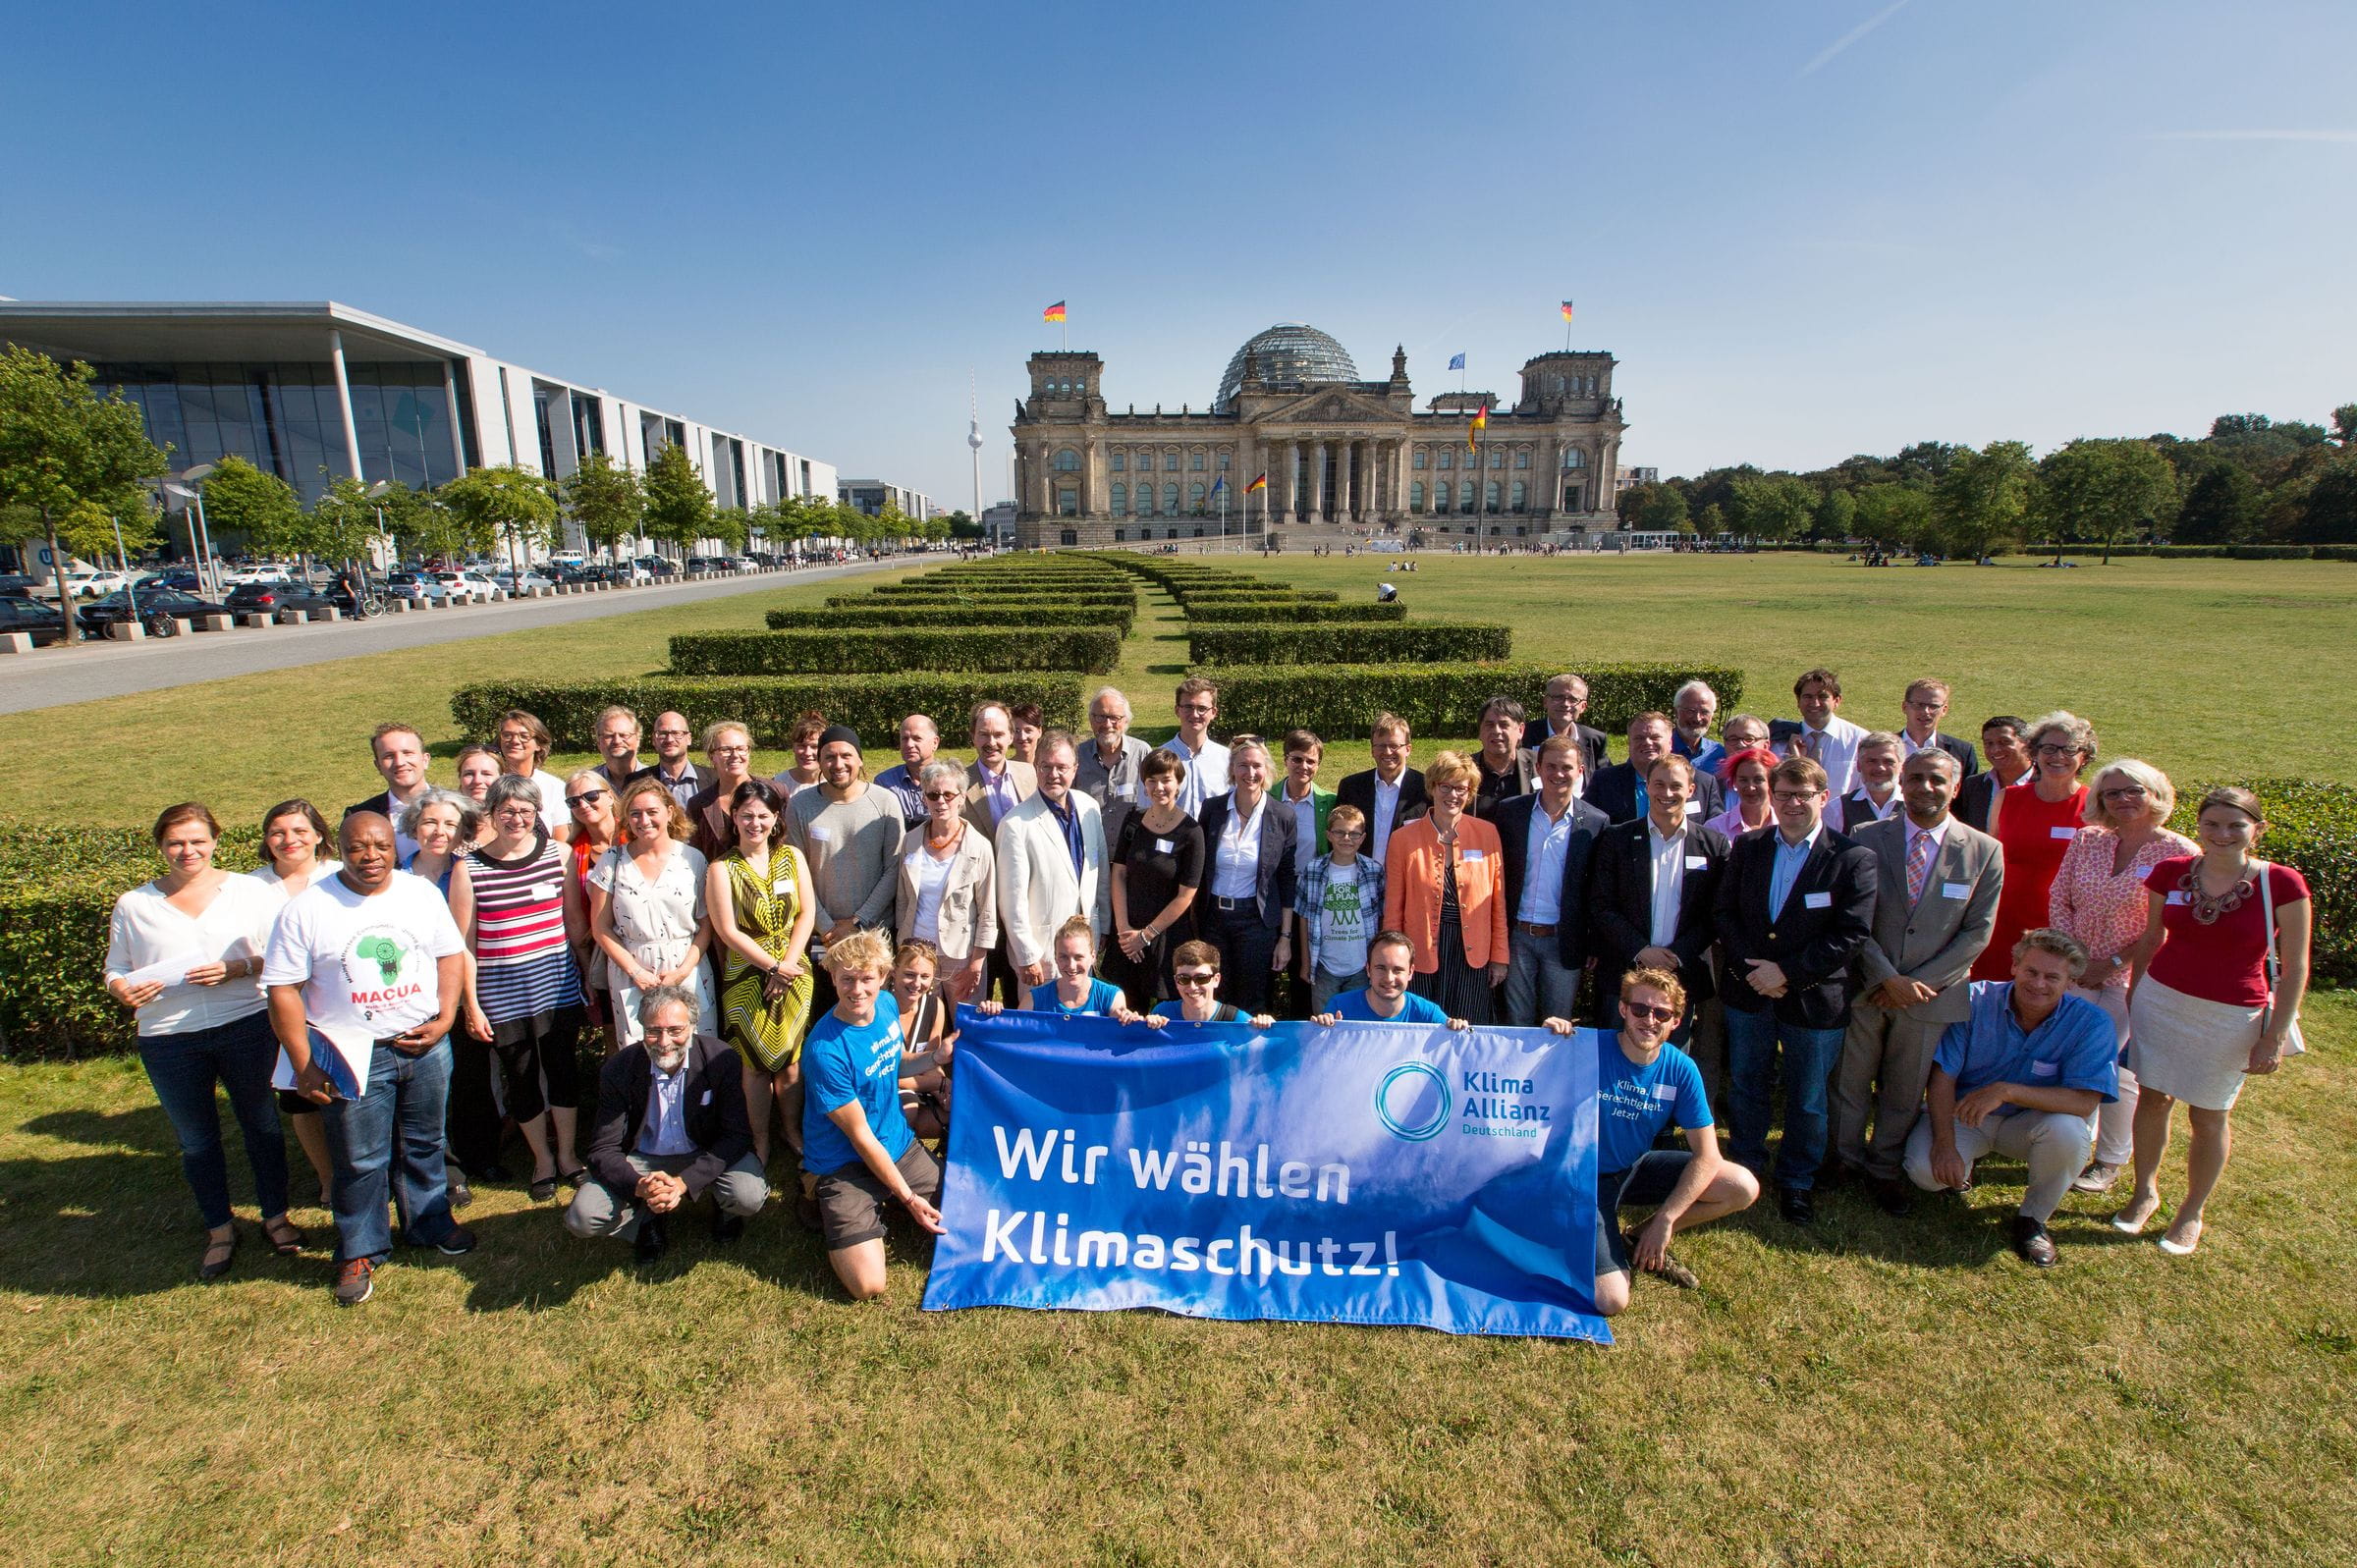 Klima-Allianz-Bankett 2016: Gruppenfoto auf Wiese (Quelle: Jörg Farys/Klima-Allianz Deutschland)